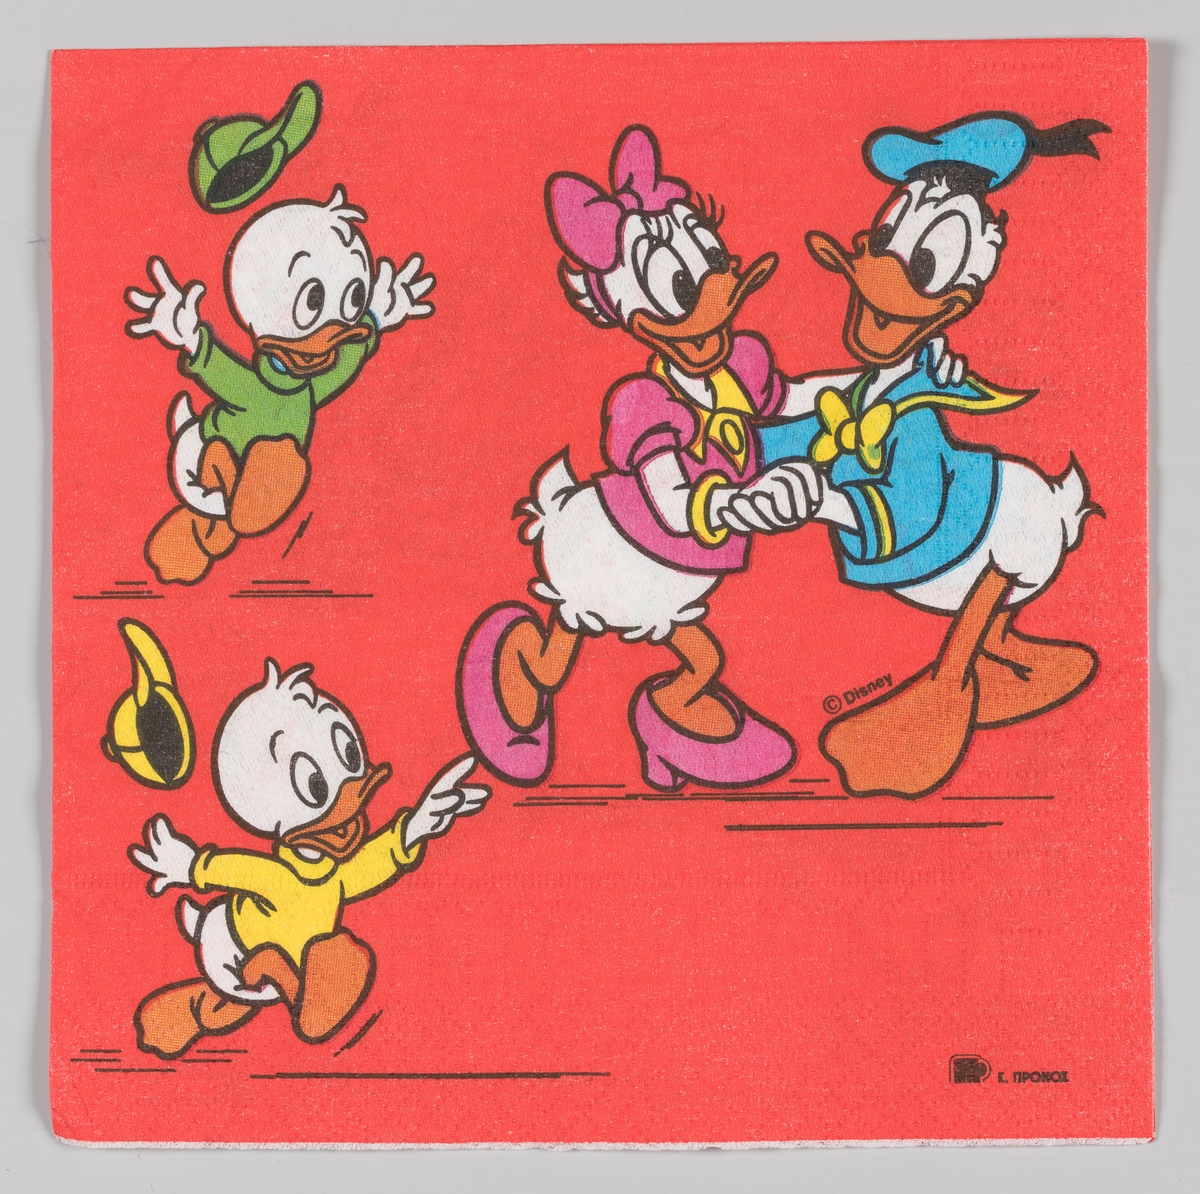 Donald Duck og Dolly danser mens Ole og Dole løper